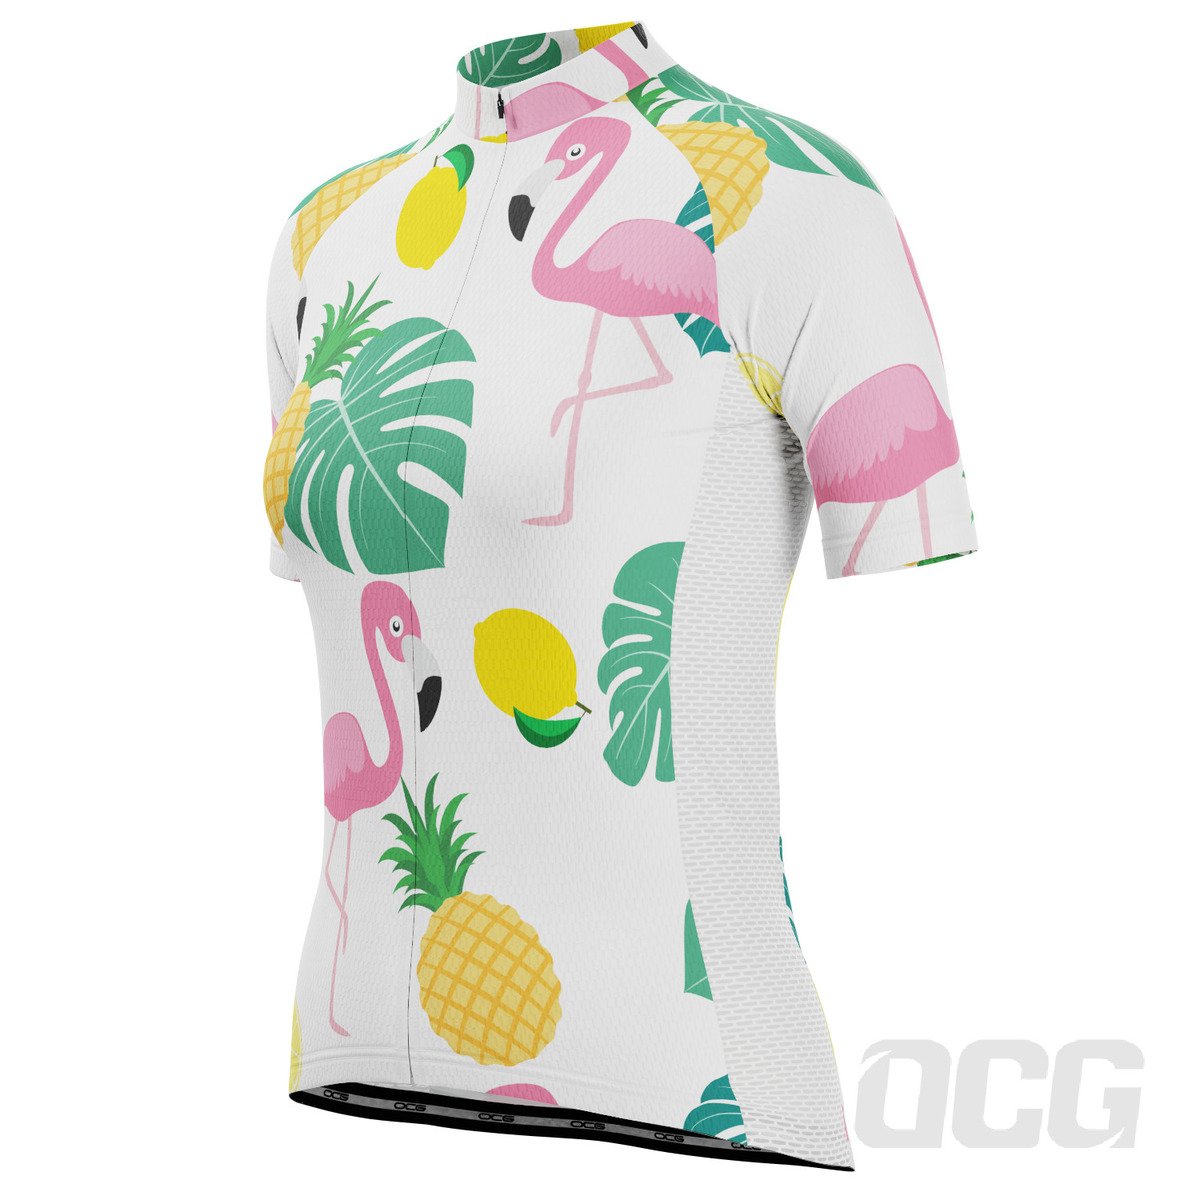 Women's Fruity Flamingo Short Sleeve Cycling Jersey